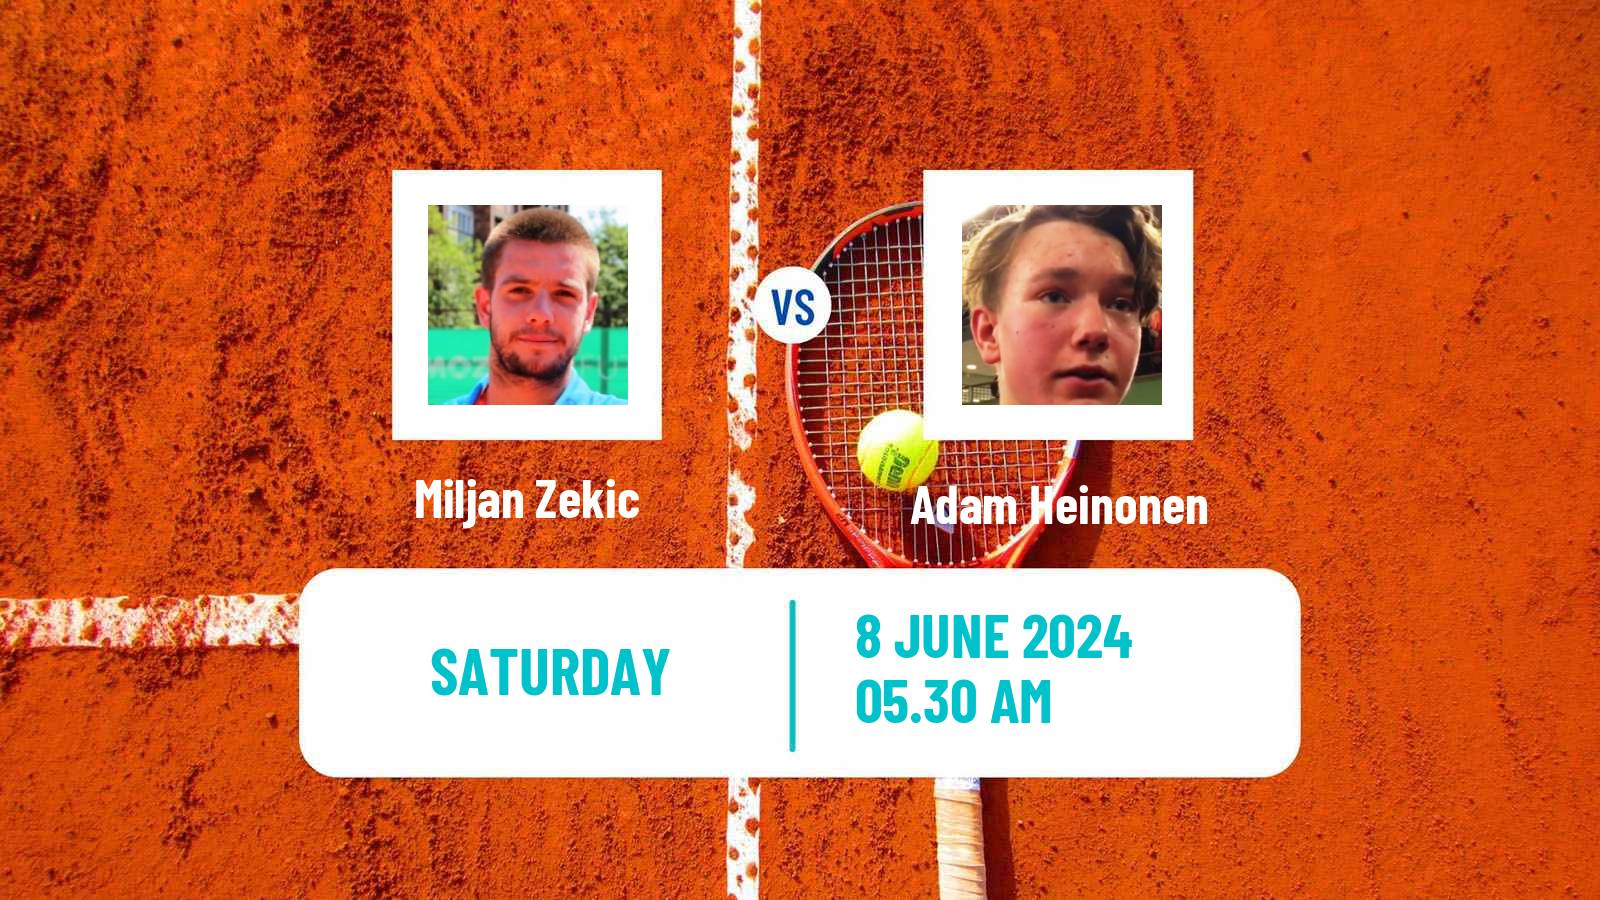 Tennis ITF M25 Kursumlijska Banja 2 Men Miljan Zekic - Adam Heinonen